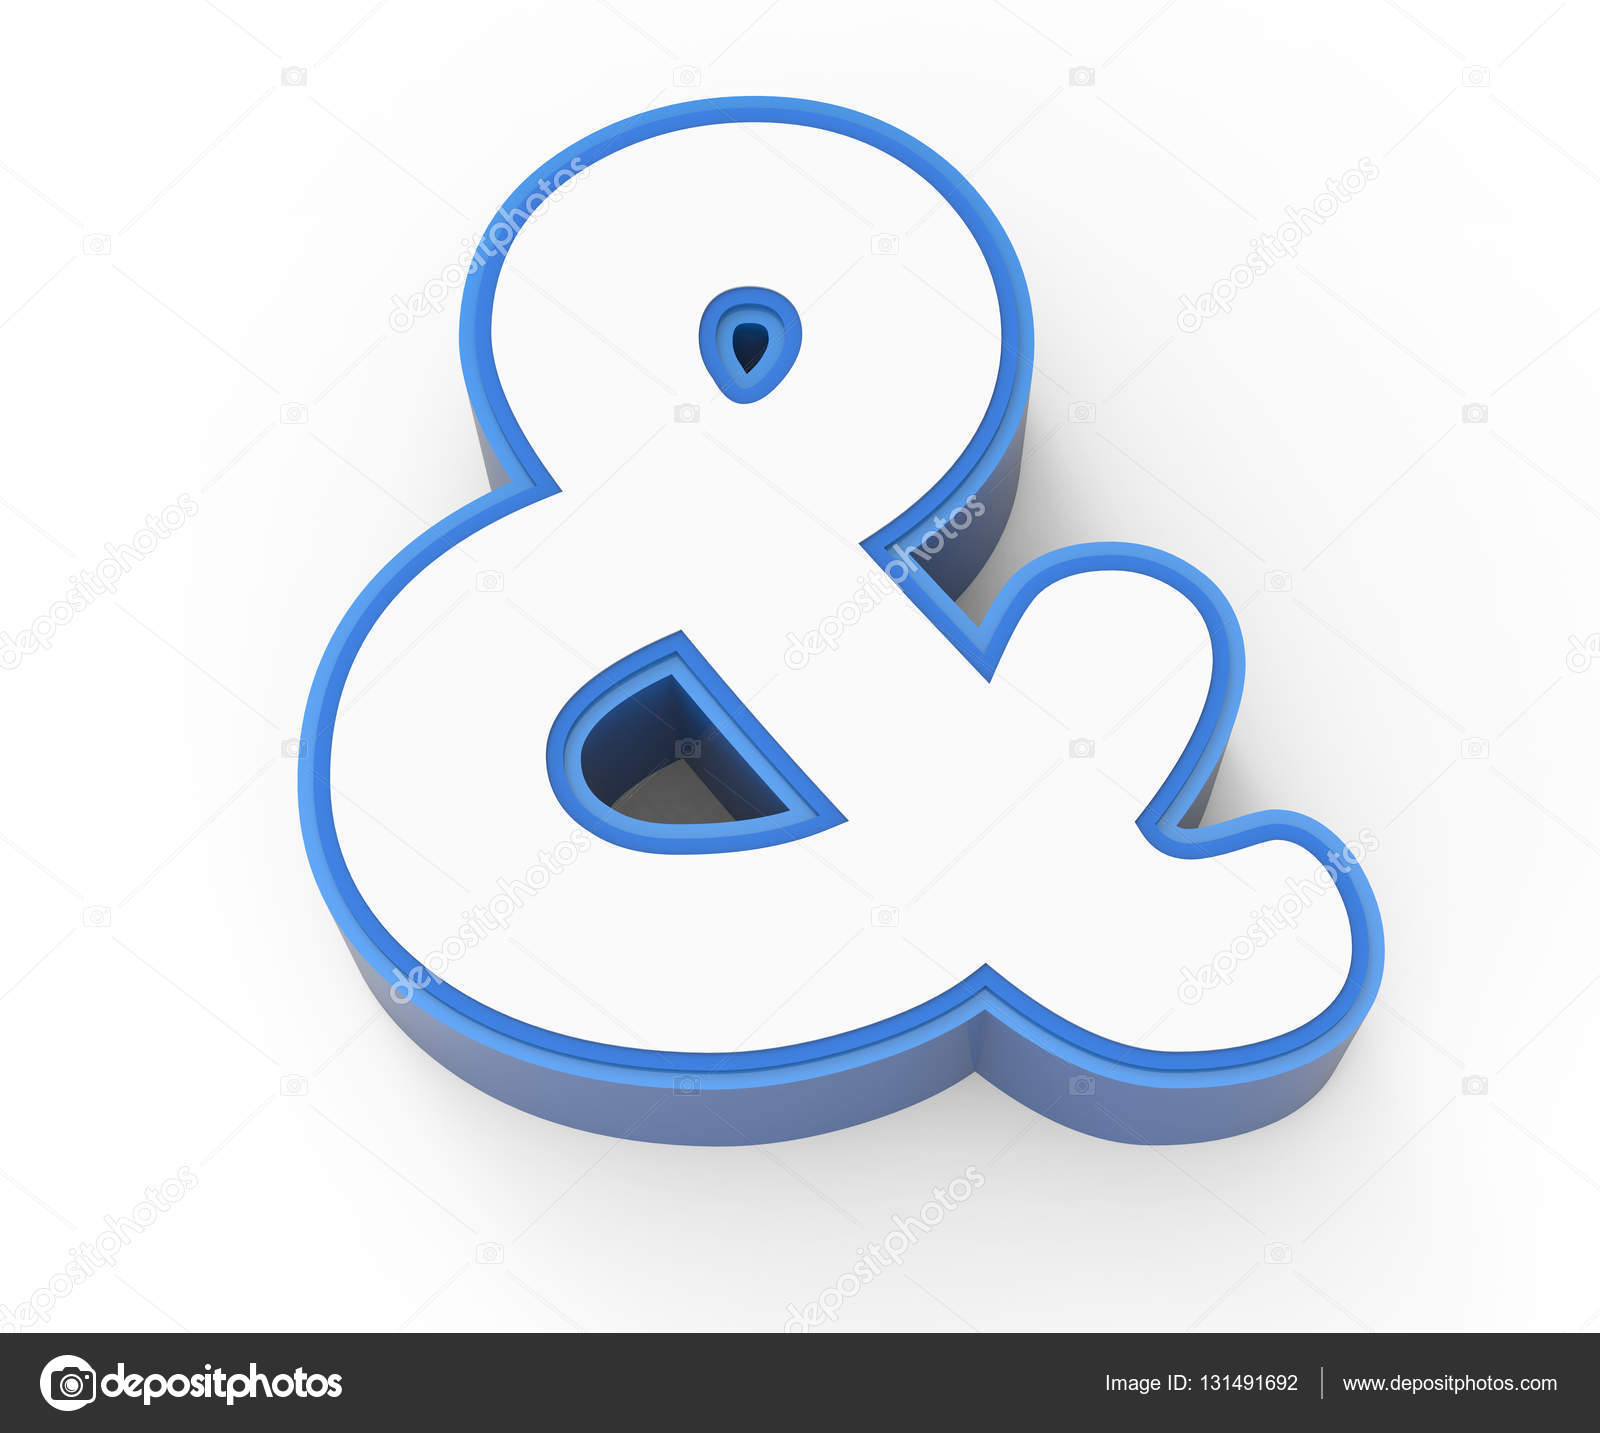 Blue framed white ampersand mark Stock Photo by ©kchungtw 131491692